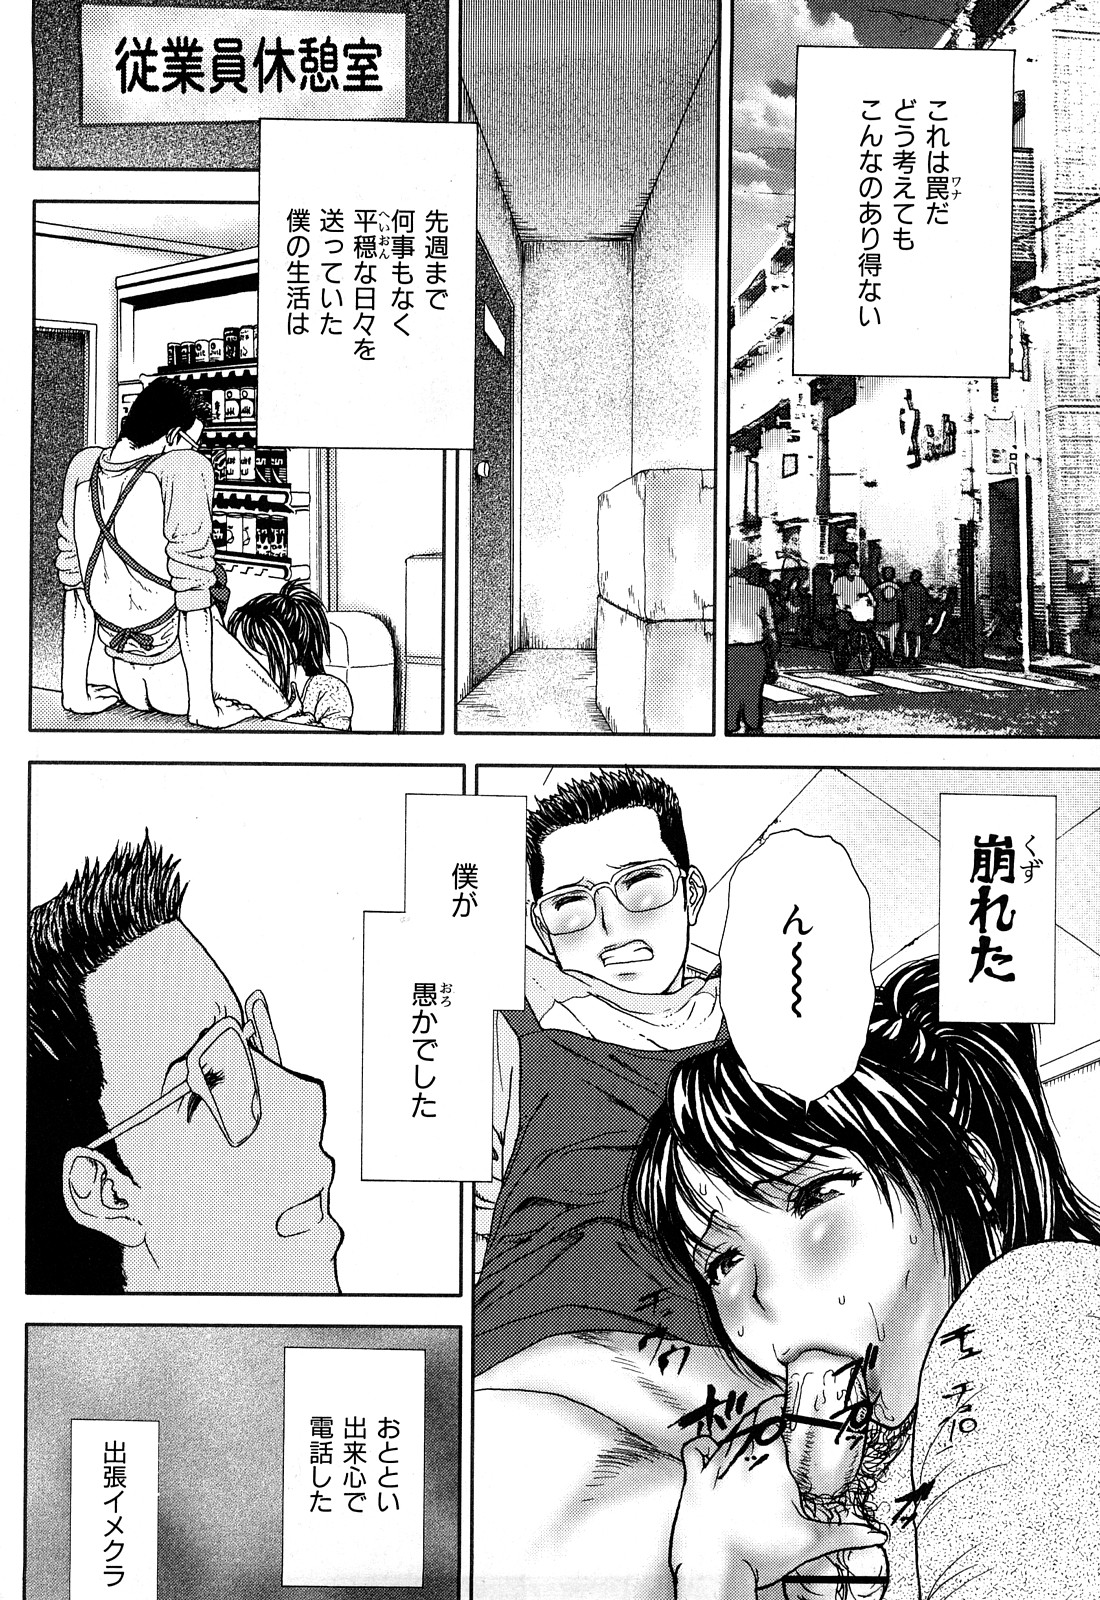 [EXTREME] Tsuma No Shizuku ~Nikuyome Miyuki 29 sai~ page 6 full